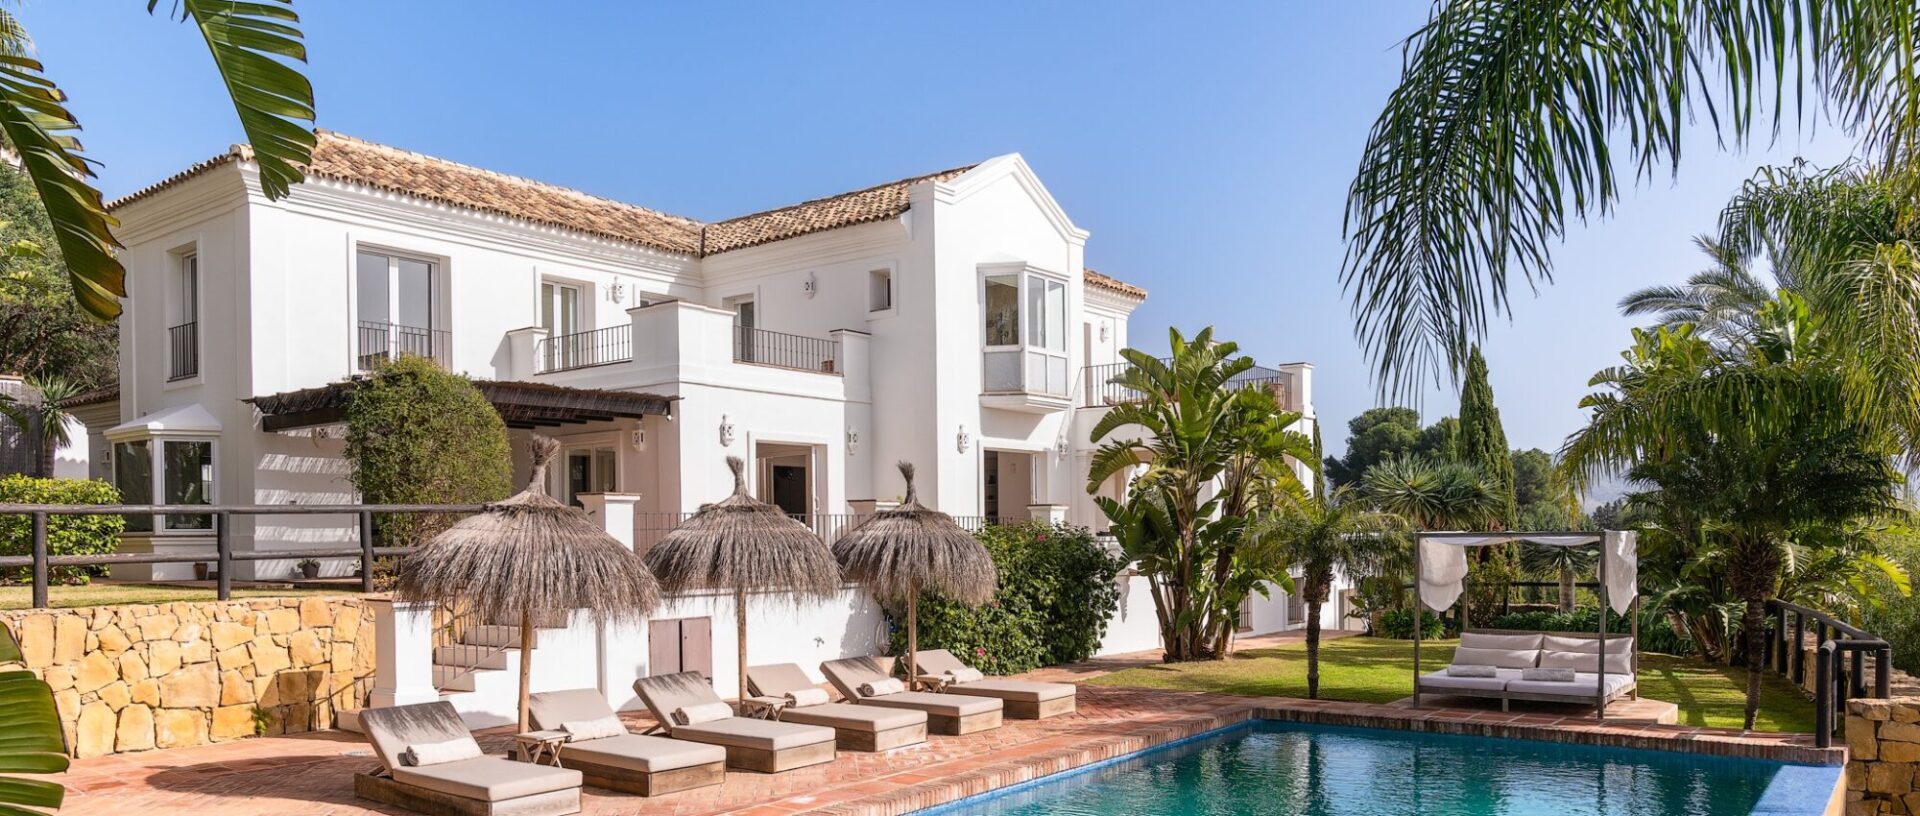 Villa im andalusischen Stil mit beeindruckender Panoramablick